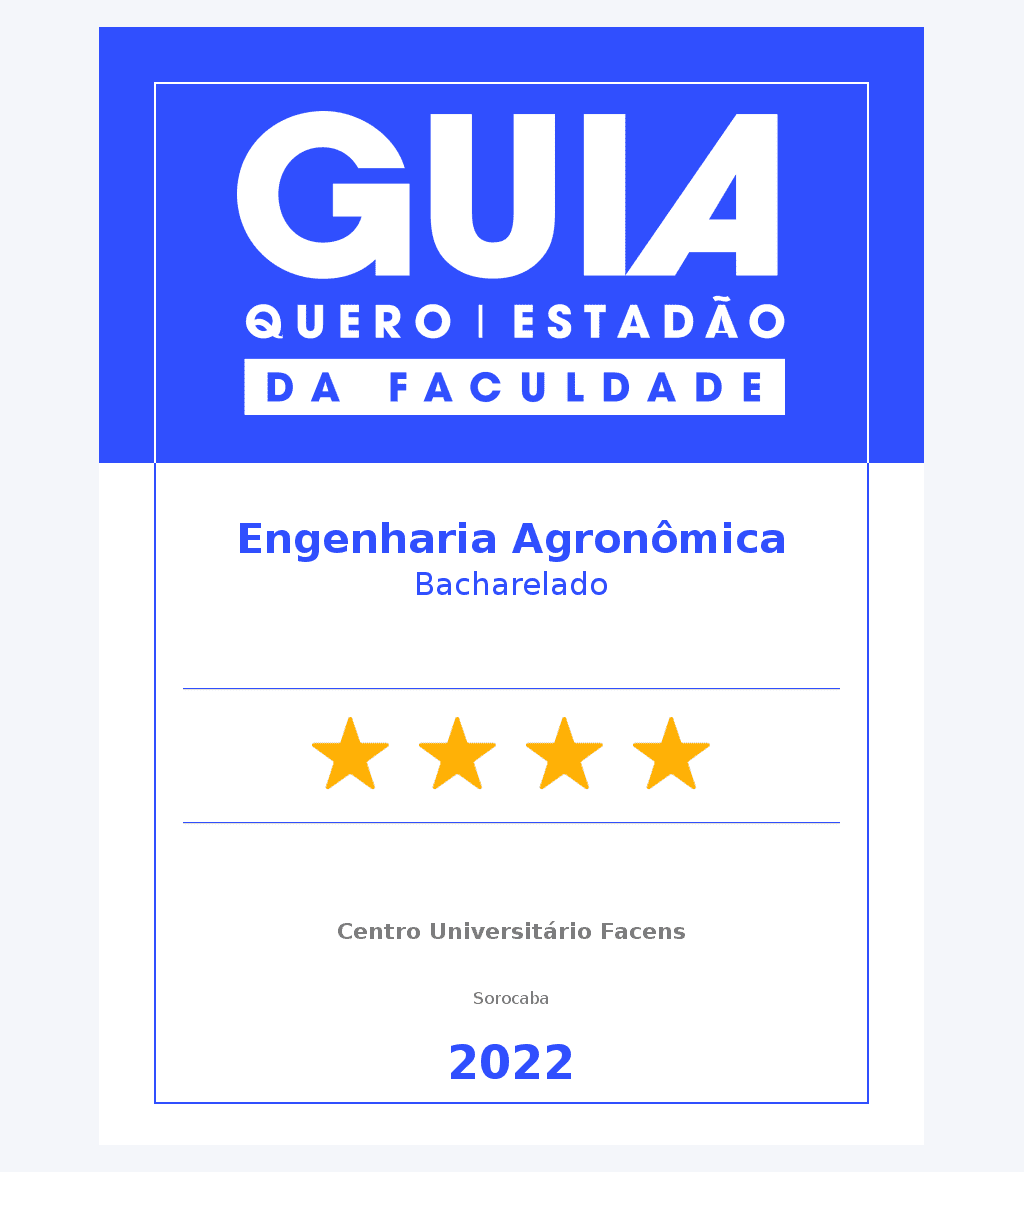 Engenharia Agronômica - 4 Estrelas Guia do Estudante 2022